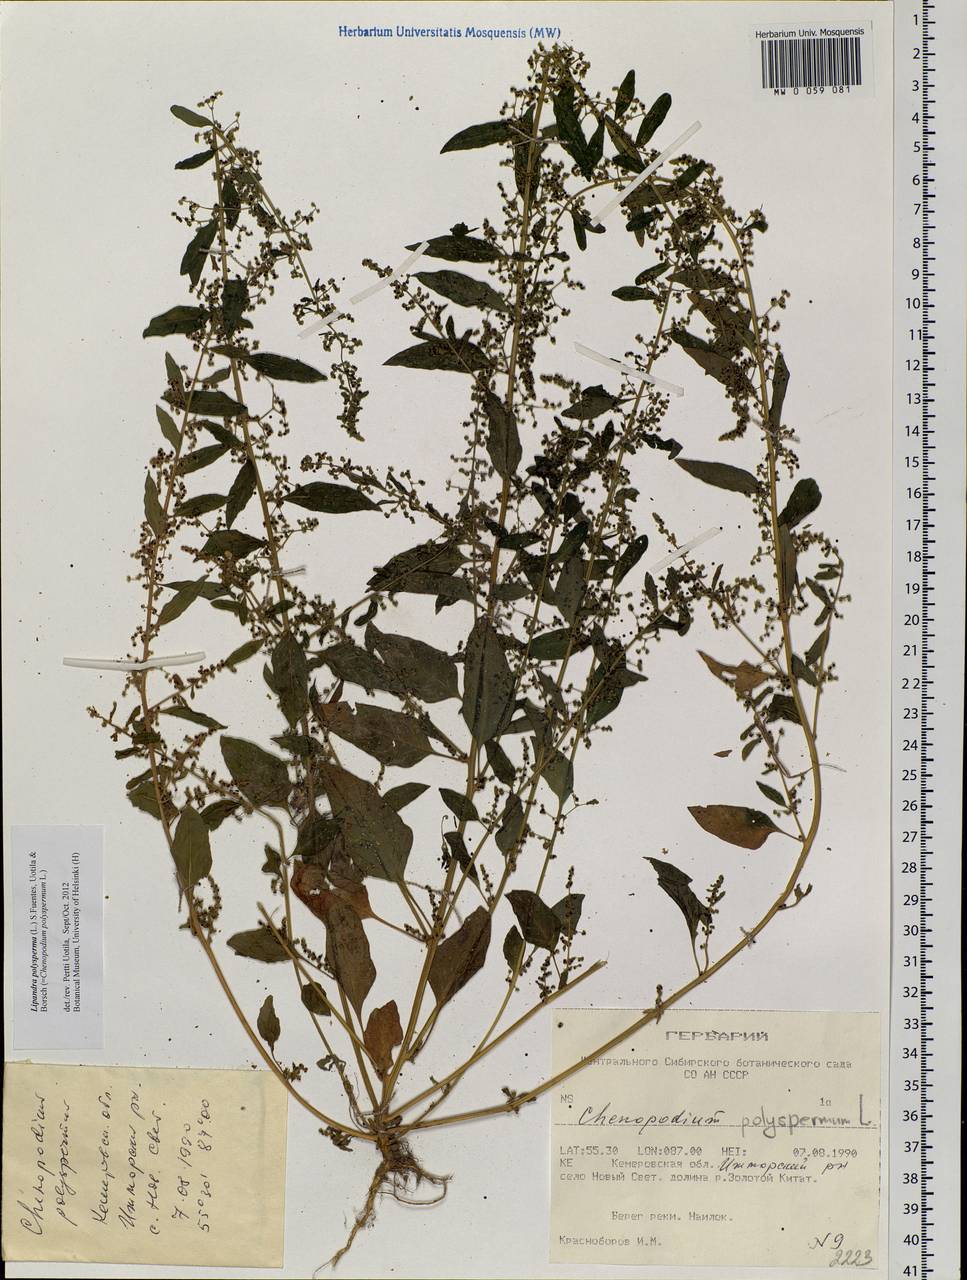 Lipandra polysperma (L.) S. Fuentes, Uotila & Borsch, Siberia, Altai & Sayany Mountains (S2) (Russia)